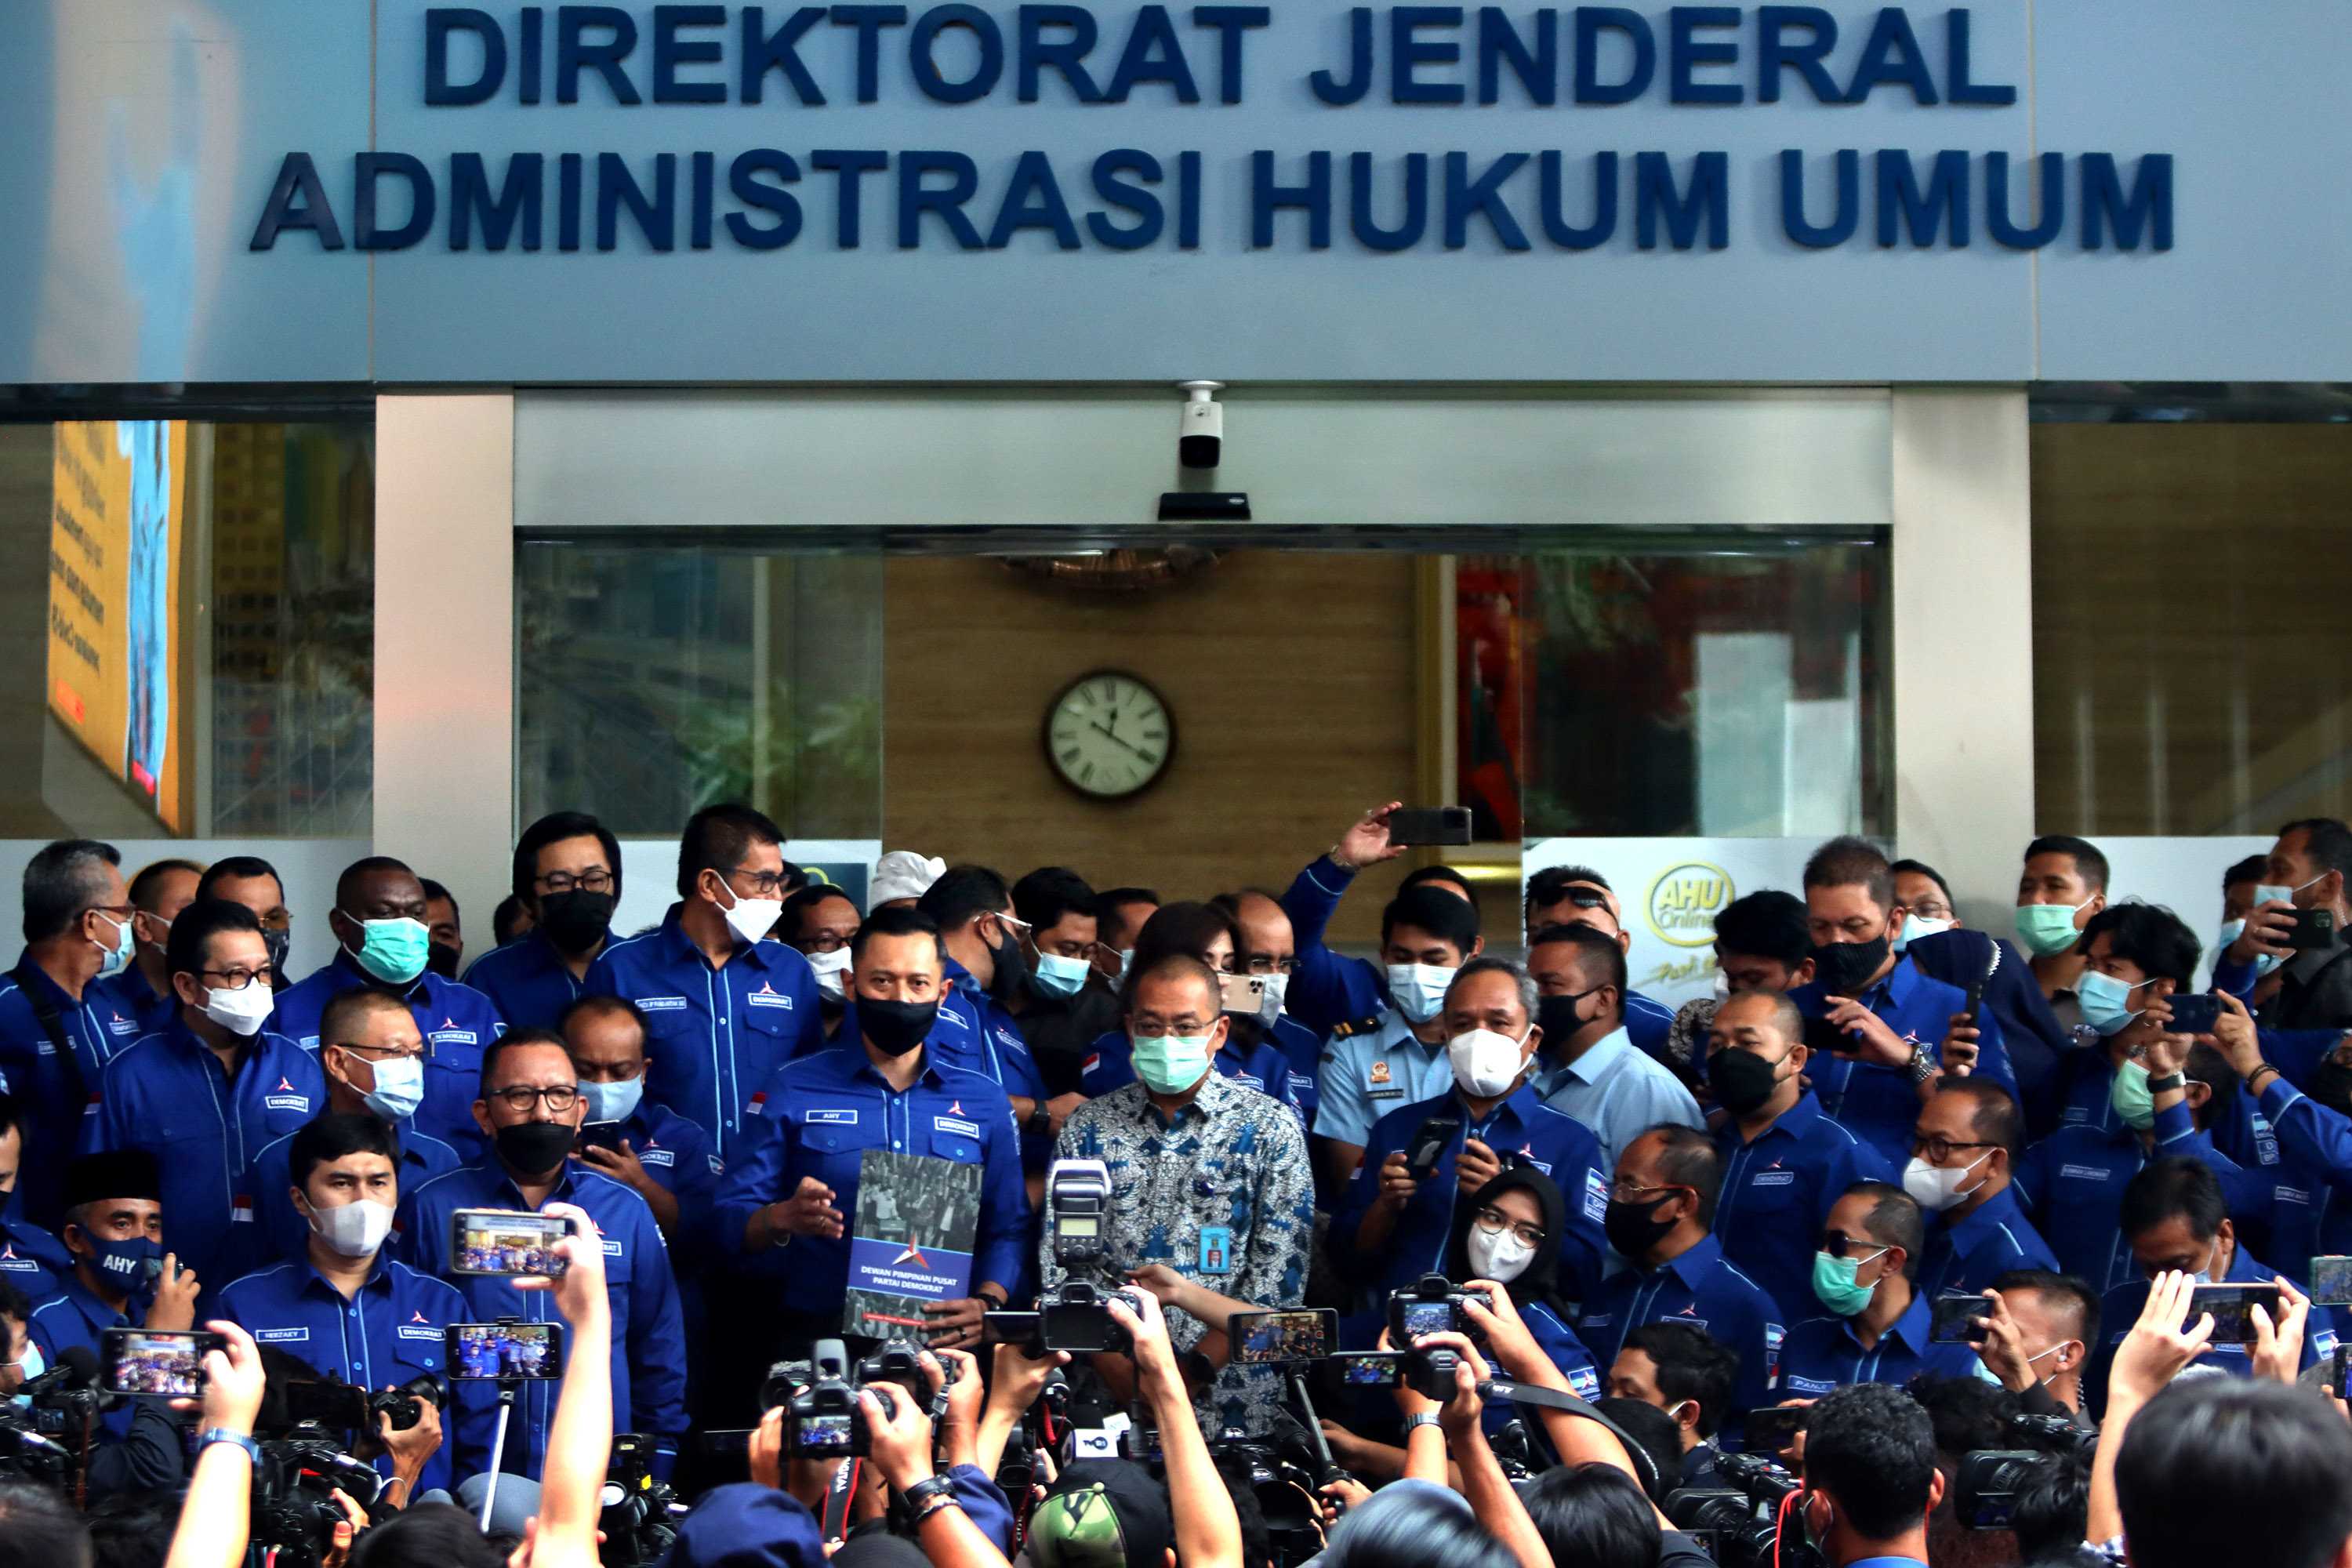 Ketua Umum Partai Demokrat Agus Harimurti Yudhoyono (AHY) (tengah) menyerahkan berkas keabsahan organisasi dan AD/ART partai kepada Dirjen AHU Kemenkumham Cahyo R Muzhar (baju batik) di Kantor Kemenkumham, Senin (8/3/2021). Foto: RES 